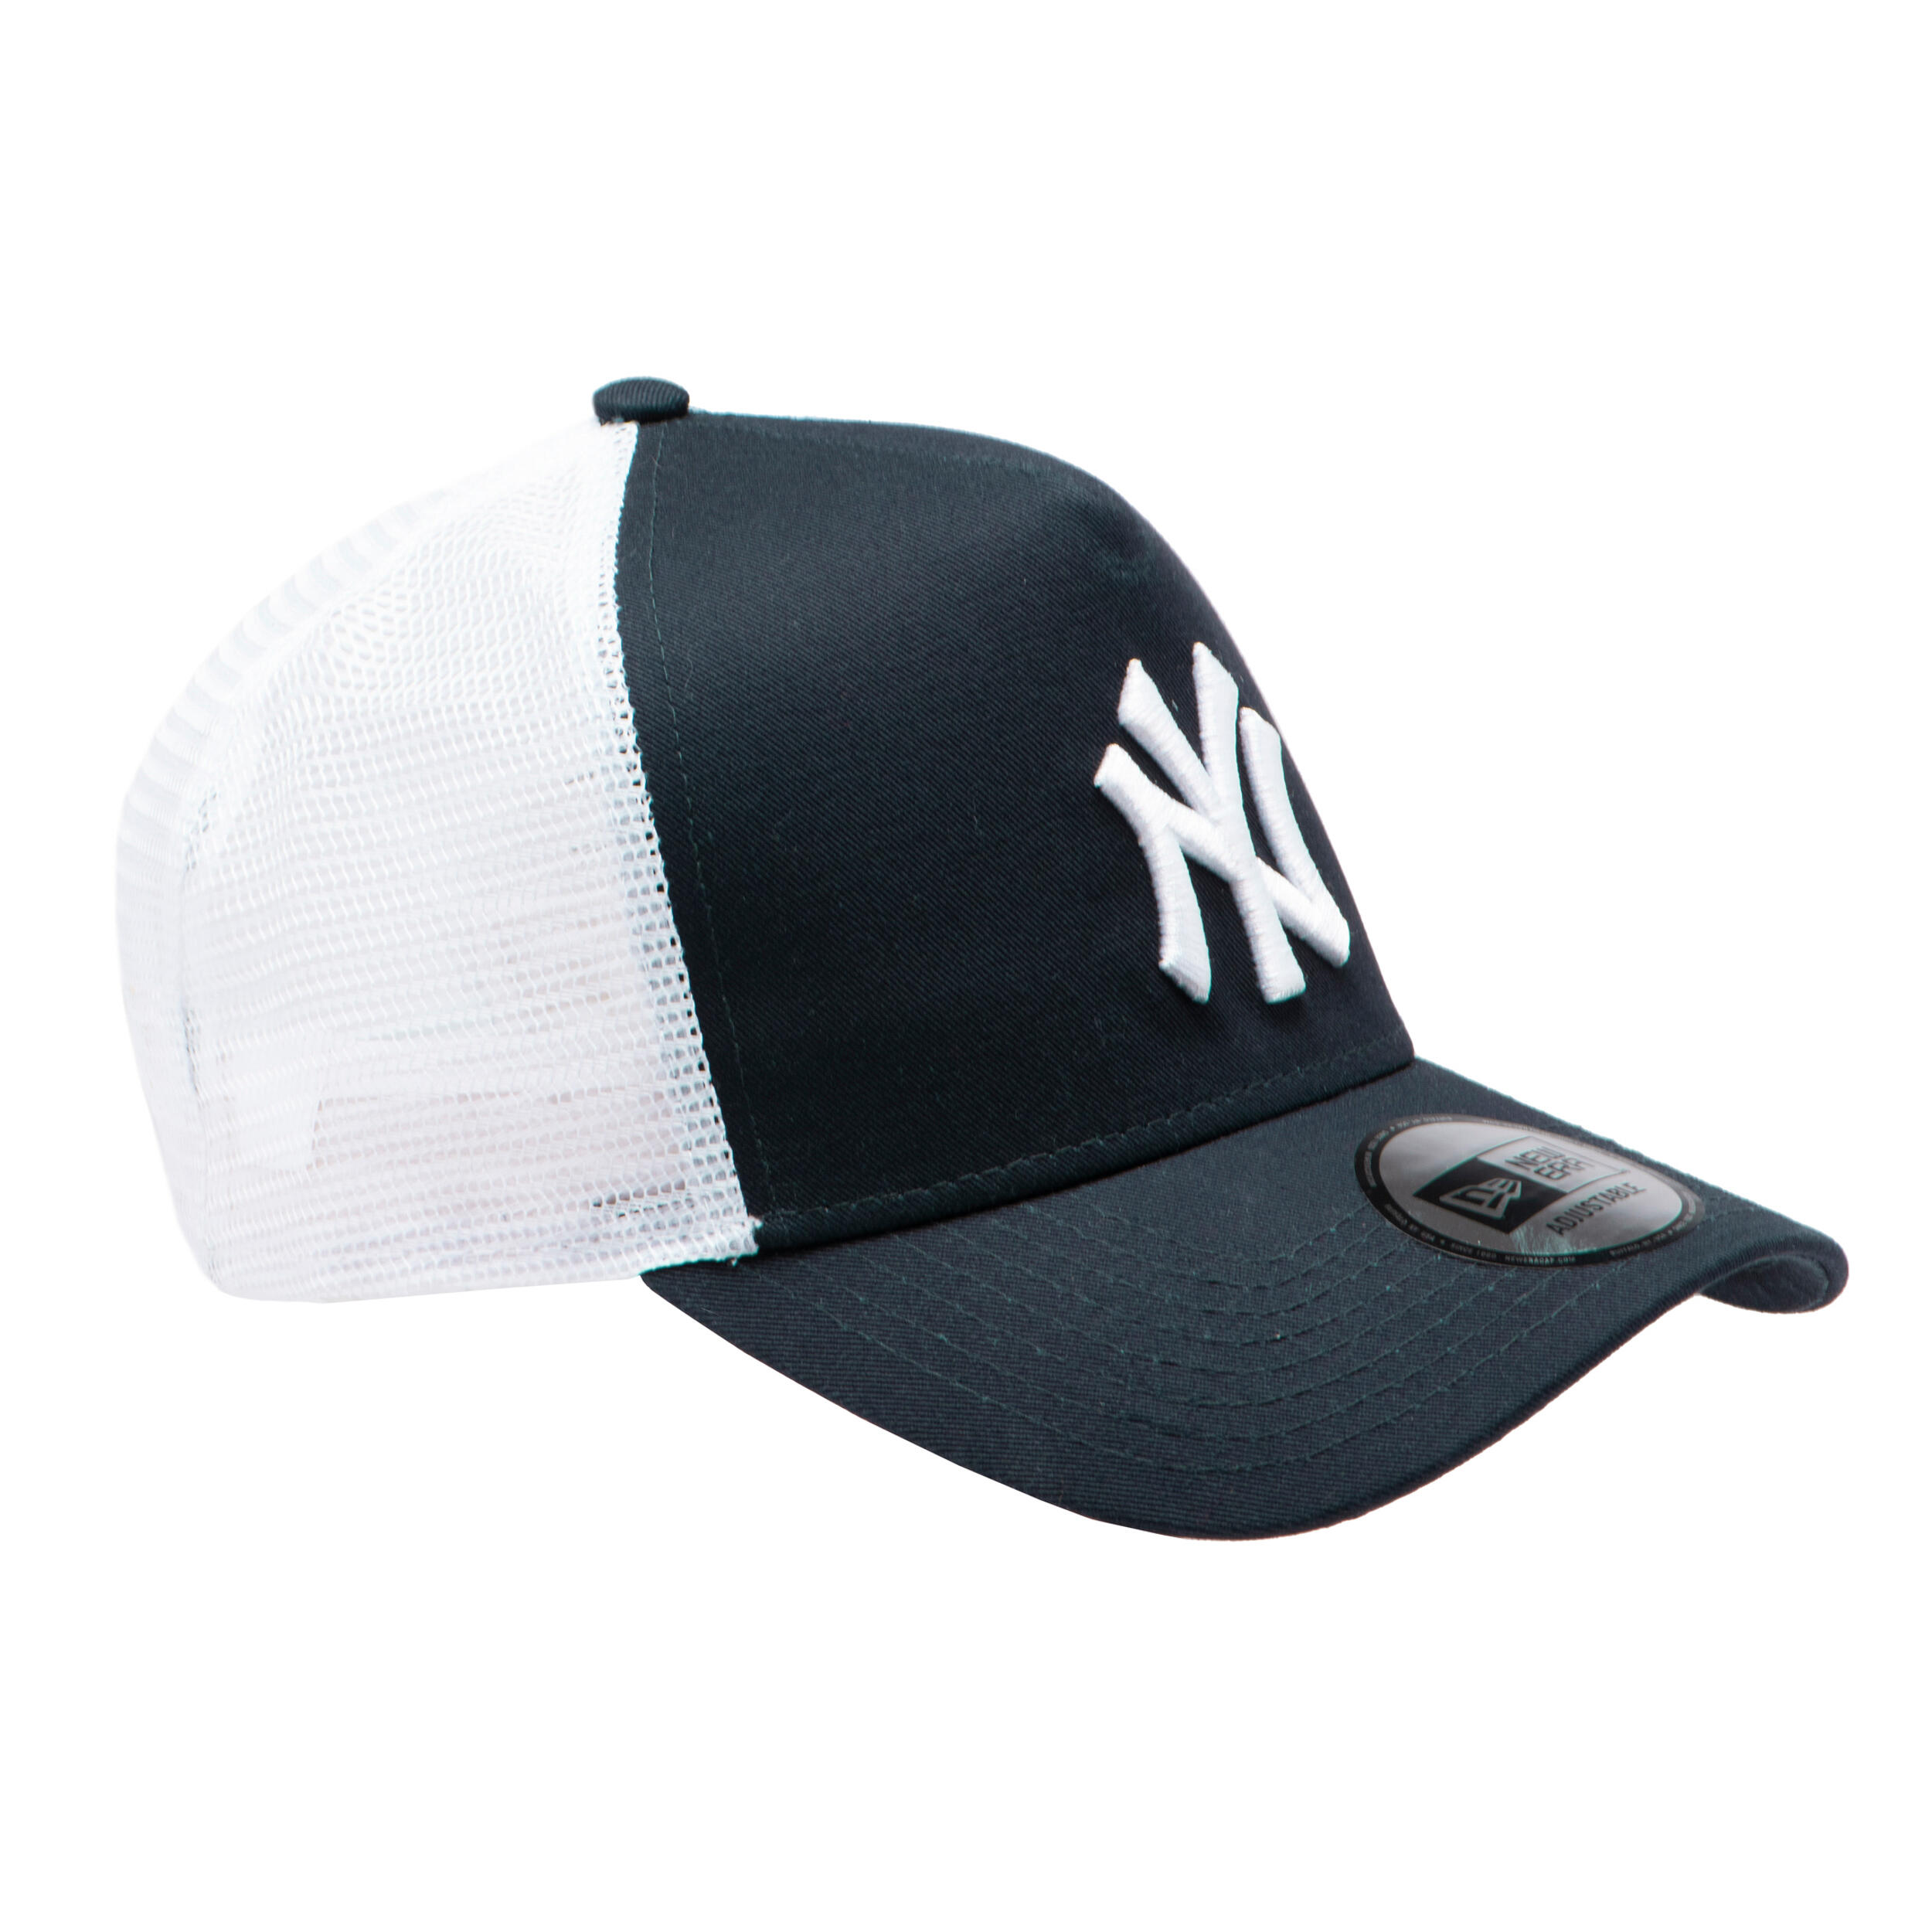 Men's/Women's MLB Baseball Cap - New York Yankees Black/White 1/9